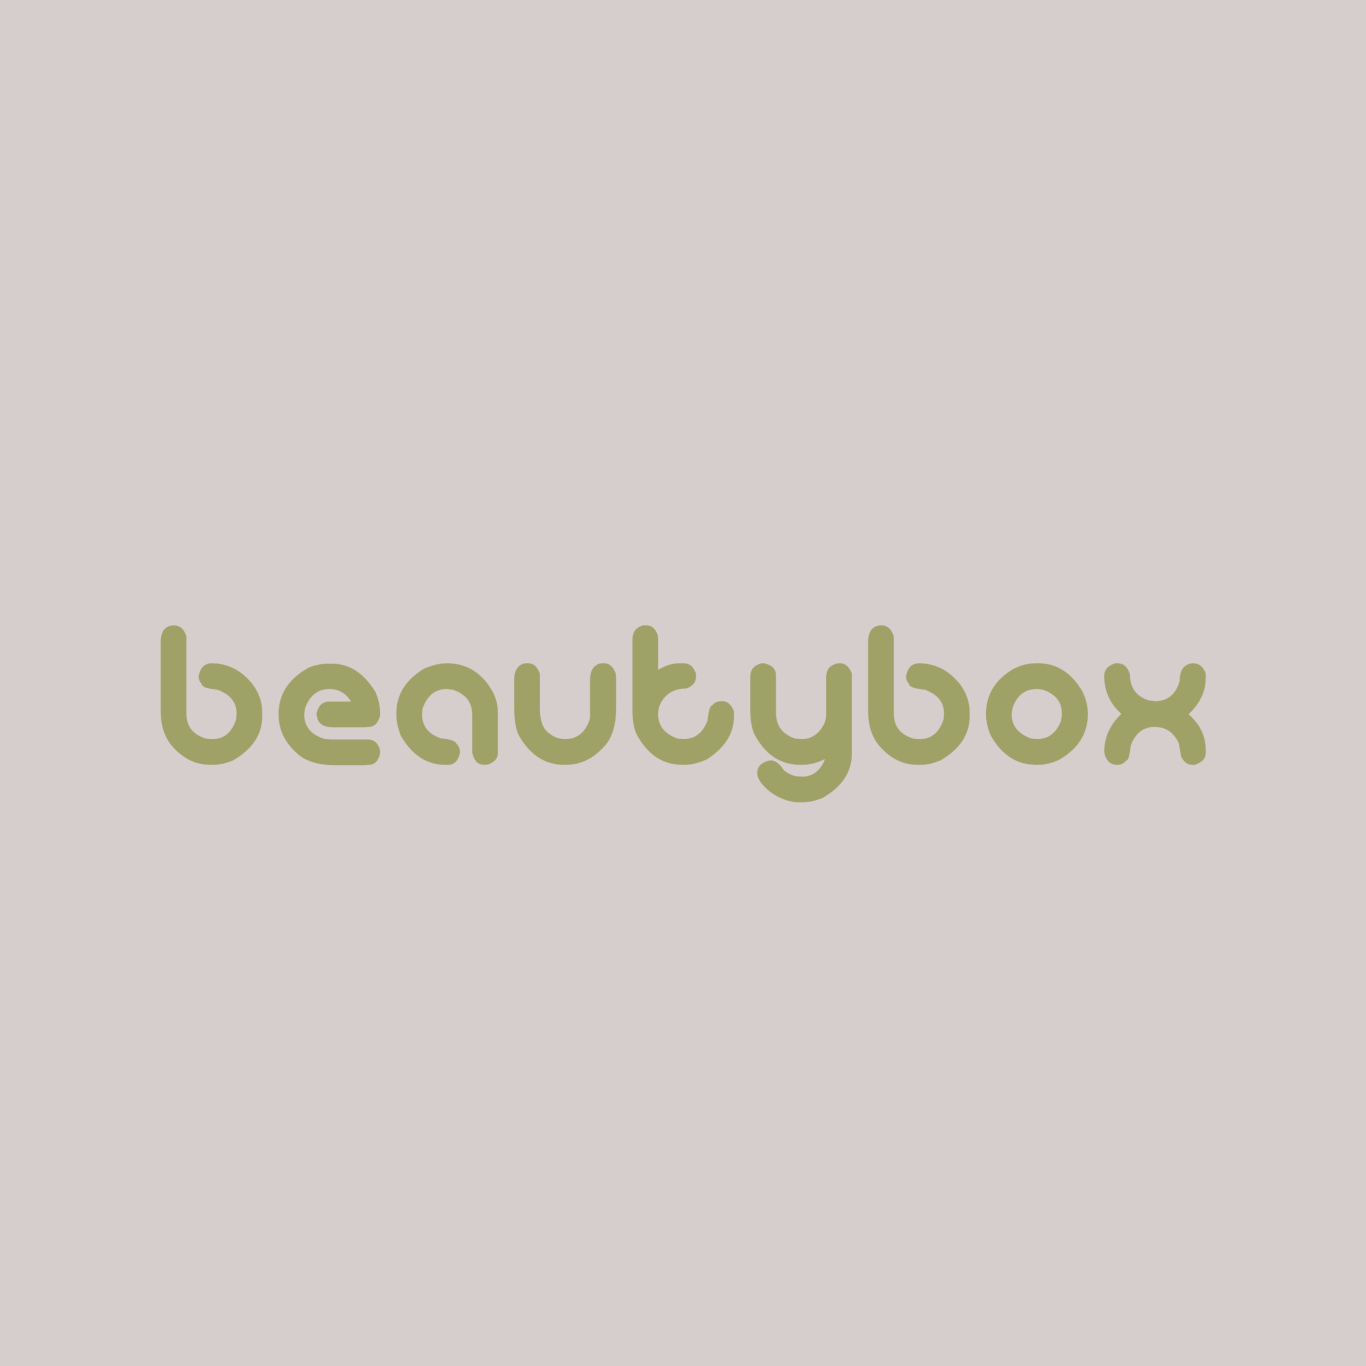 BeautyBox Opensolarium de fondo